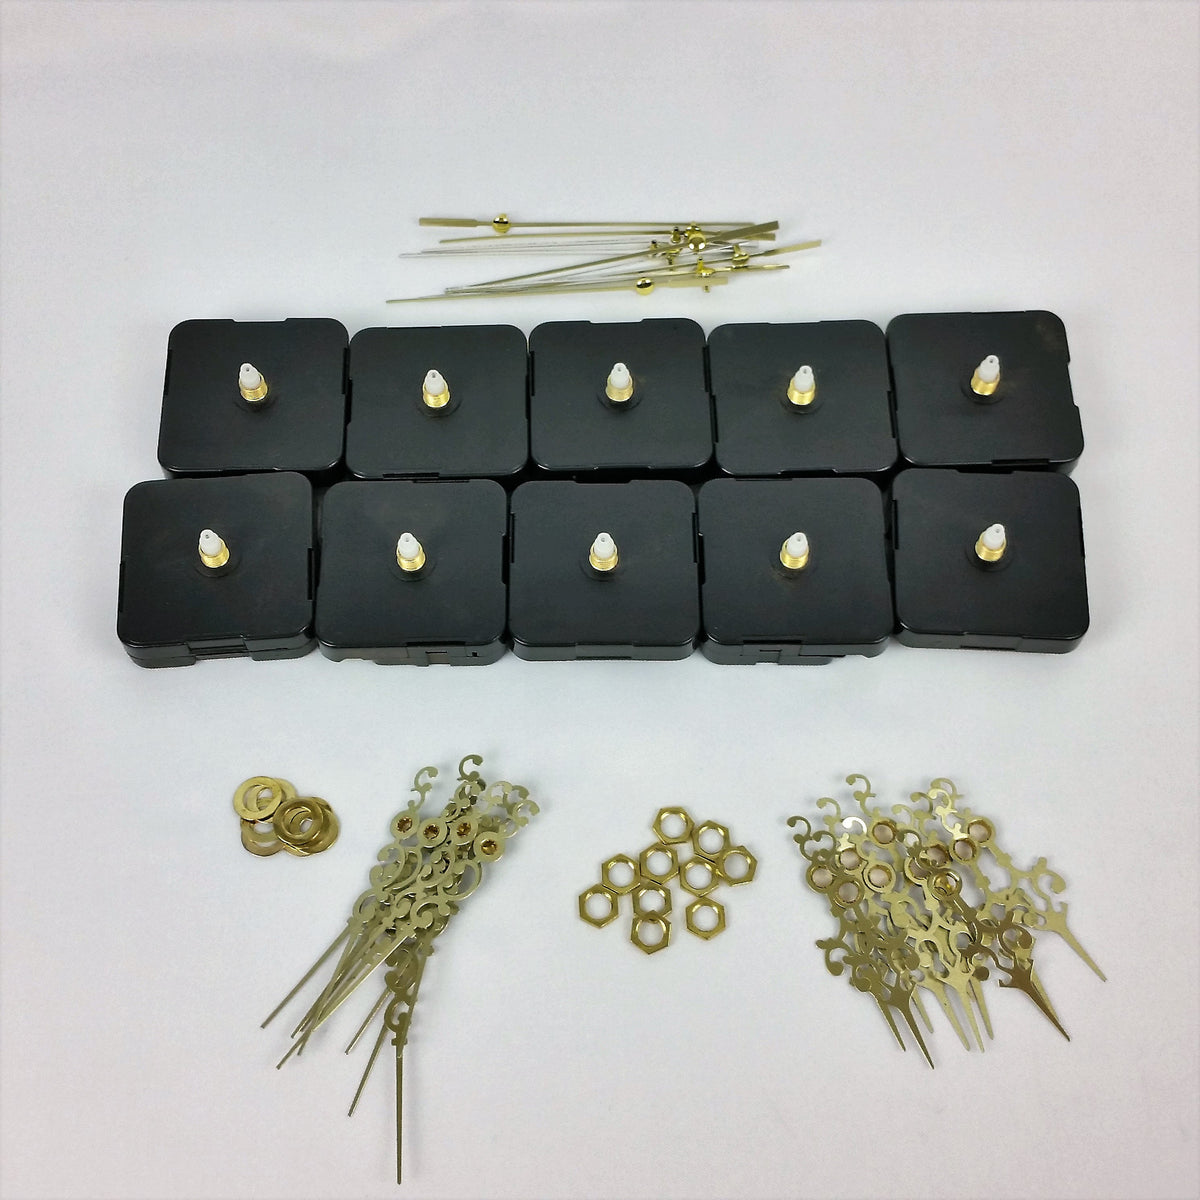 1 Quartz Clock Movement Mechanism and Brass Hands Set Kit DIY Part Serpentine SS 